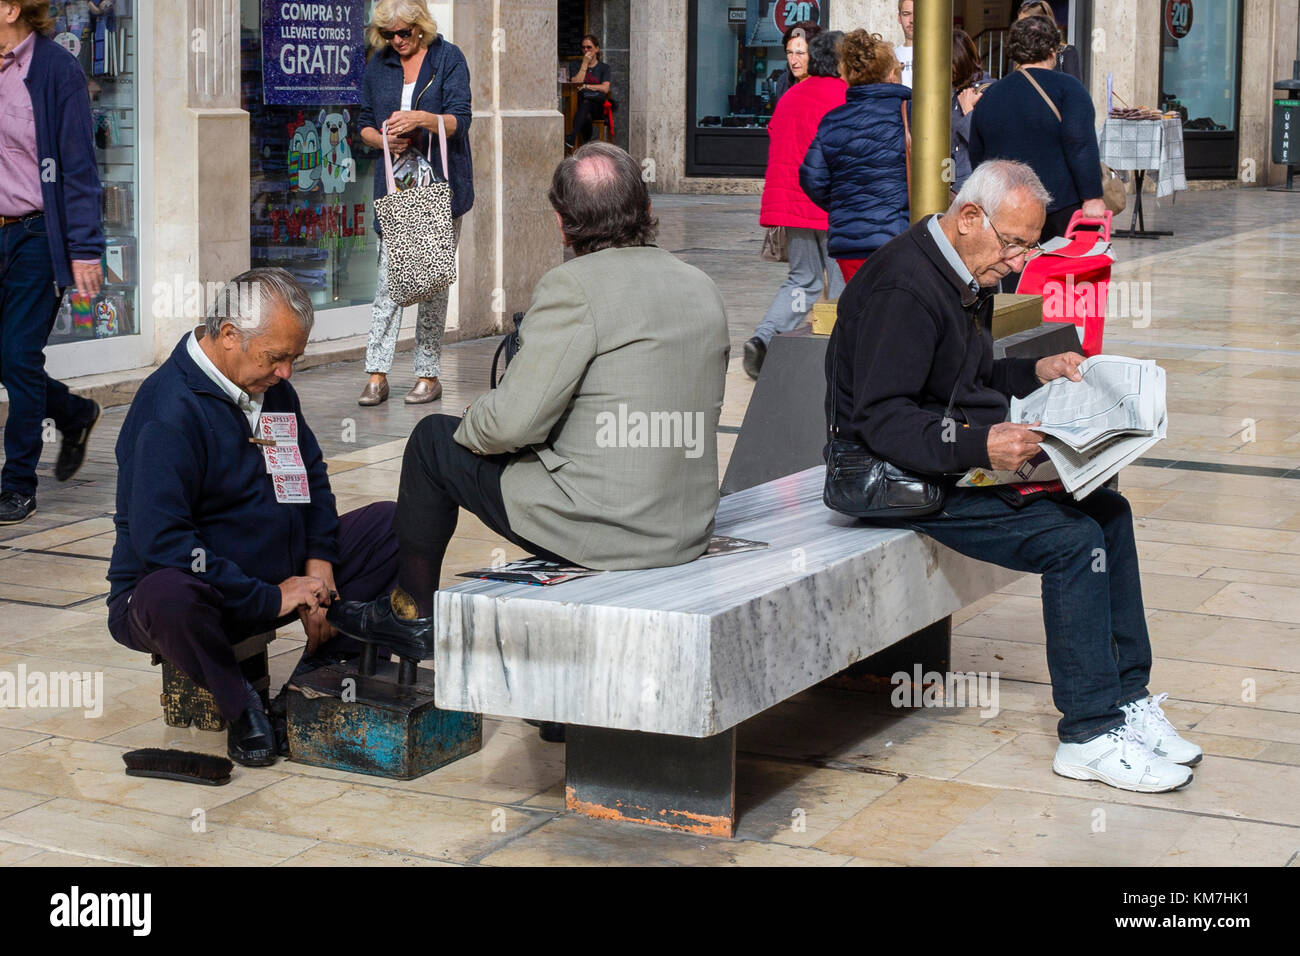 Der Mensch seine Schuhe in glänzte auf der Straße, in Malaga, Spanien Stockfoto